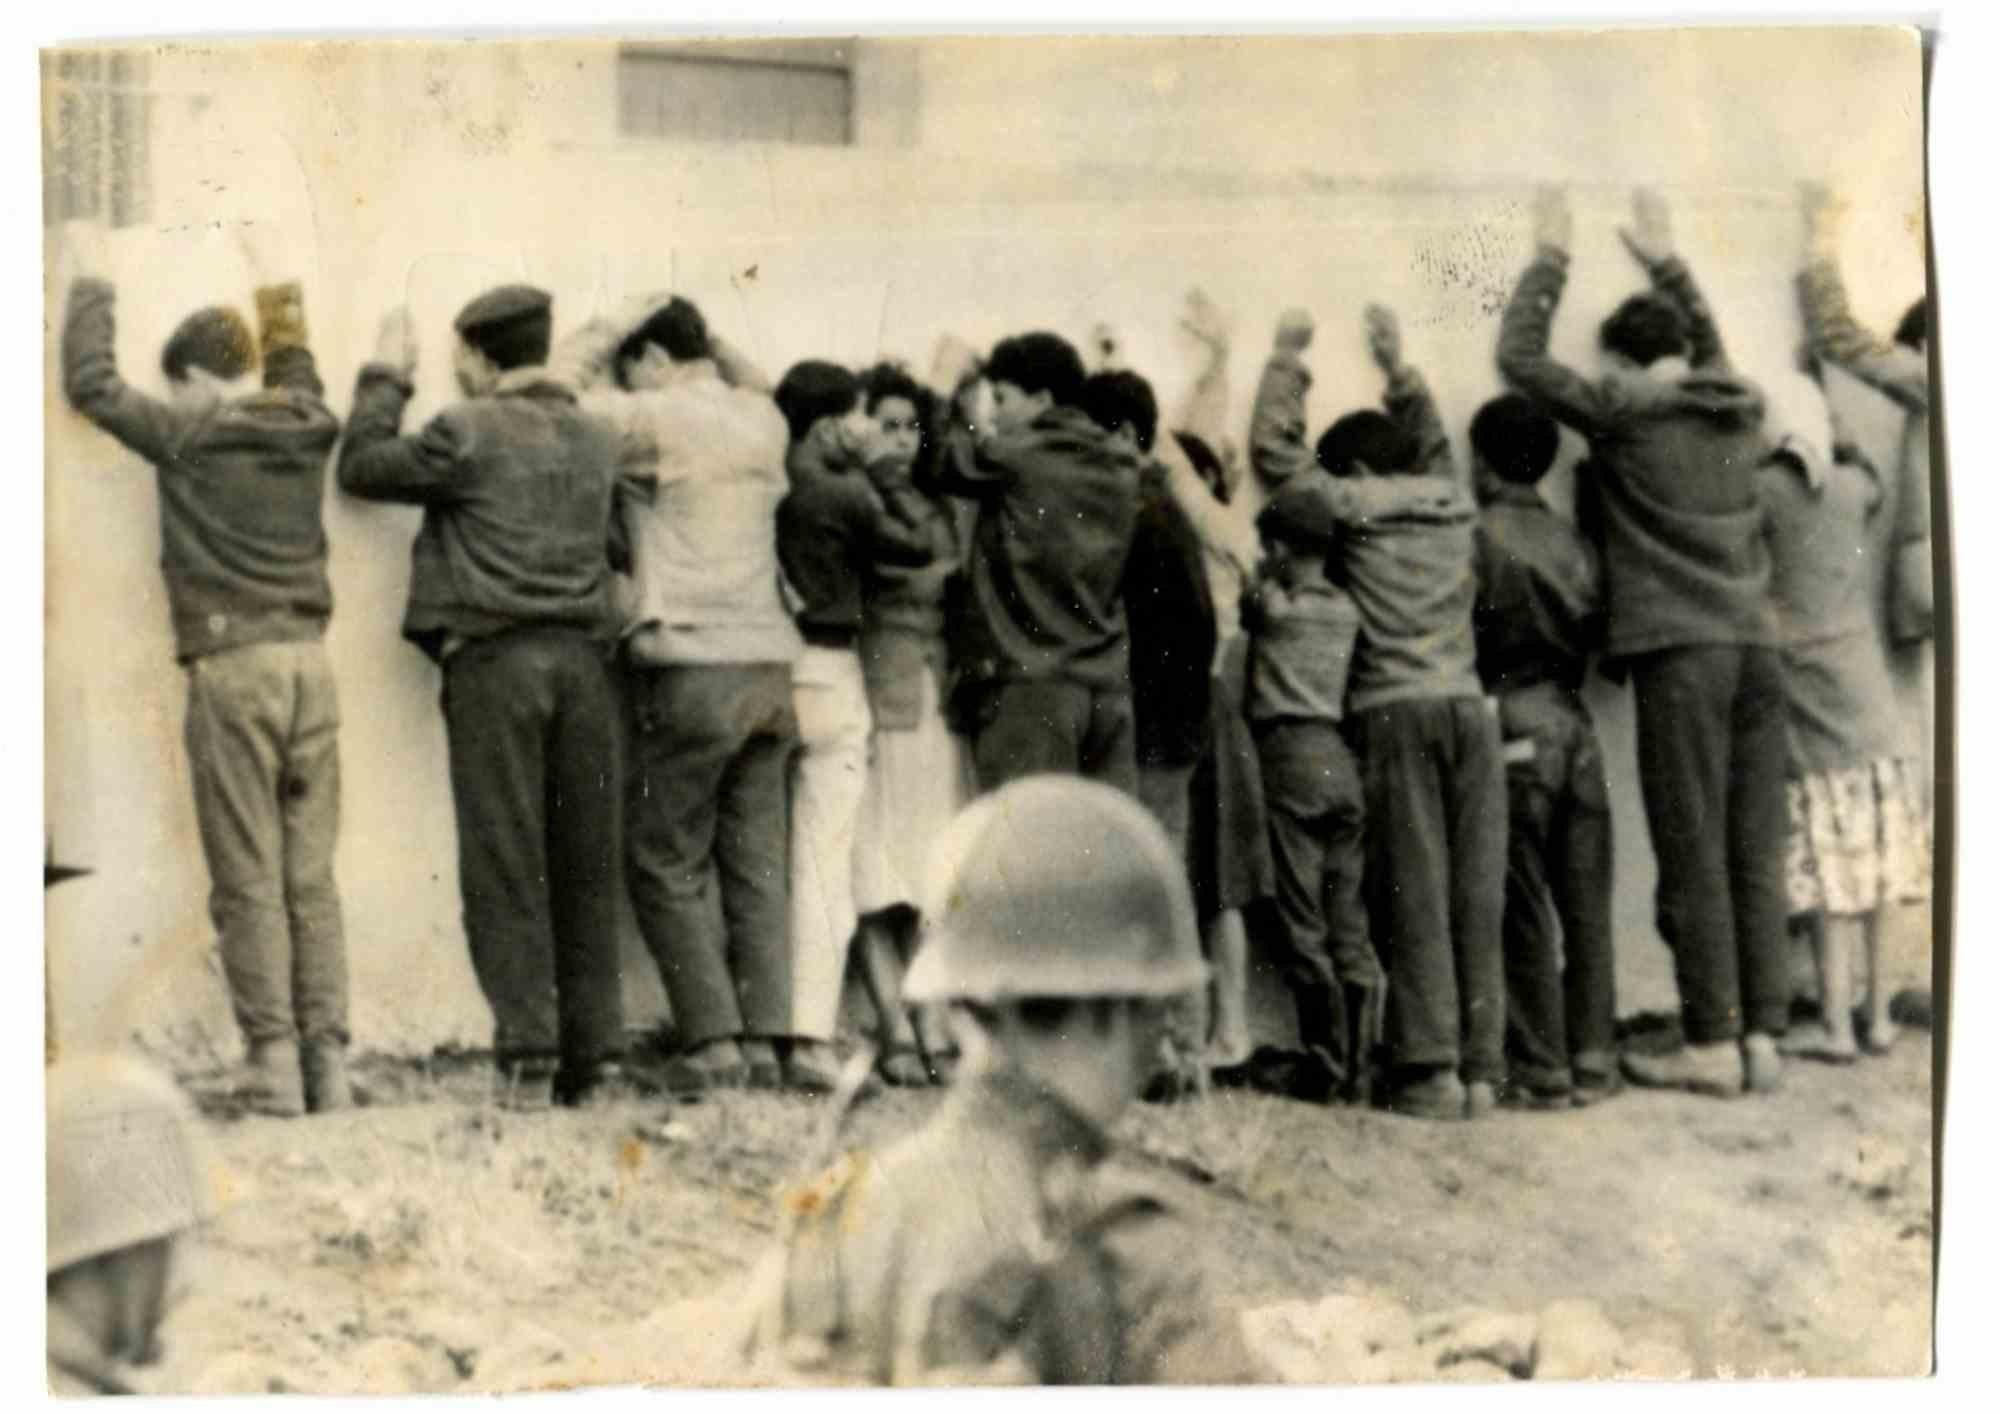 Unknown Figurative Photograph - War in Algeria - Historical Photo  - 1960s